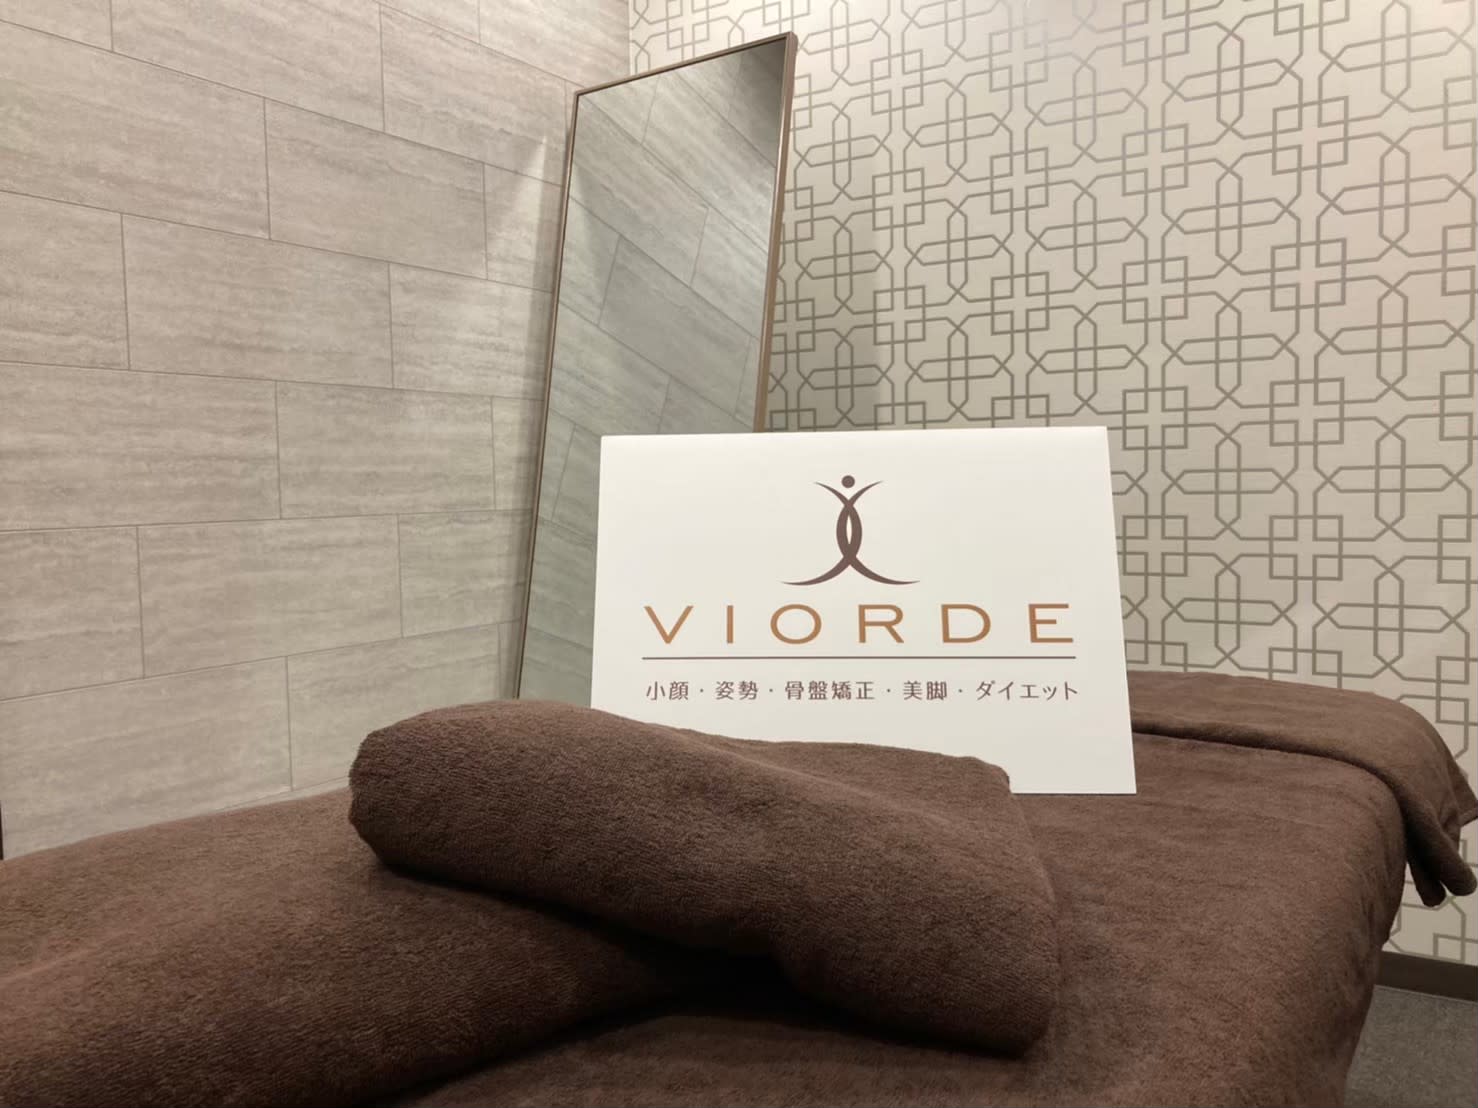 ヴィオーデ美容整体サロン 横浜店のアイキャッチ画像